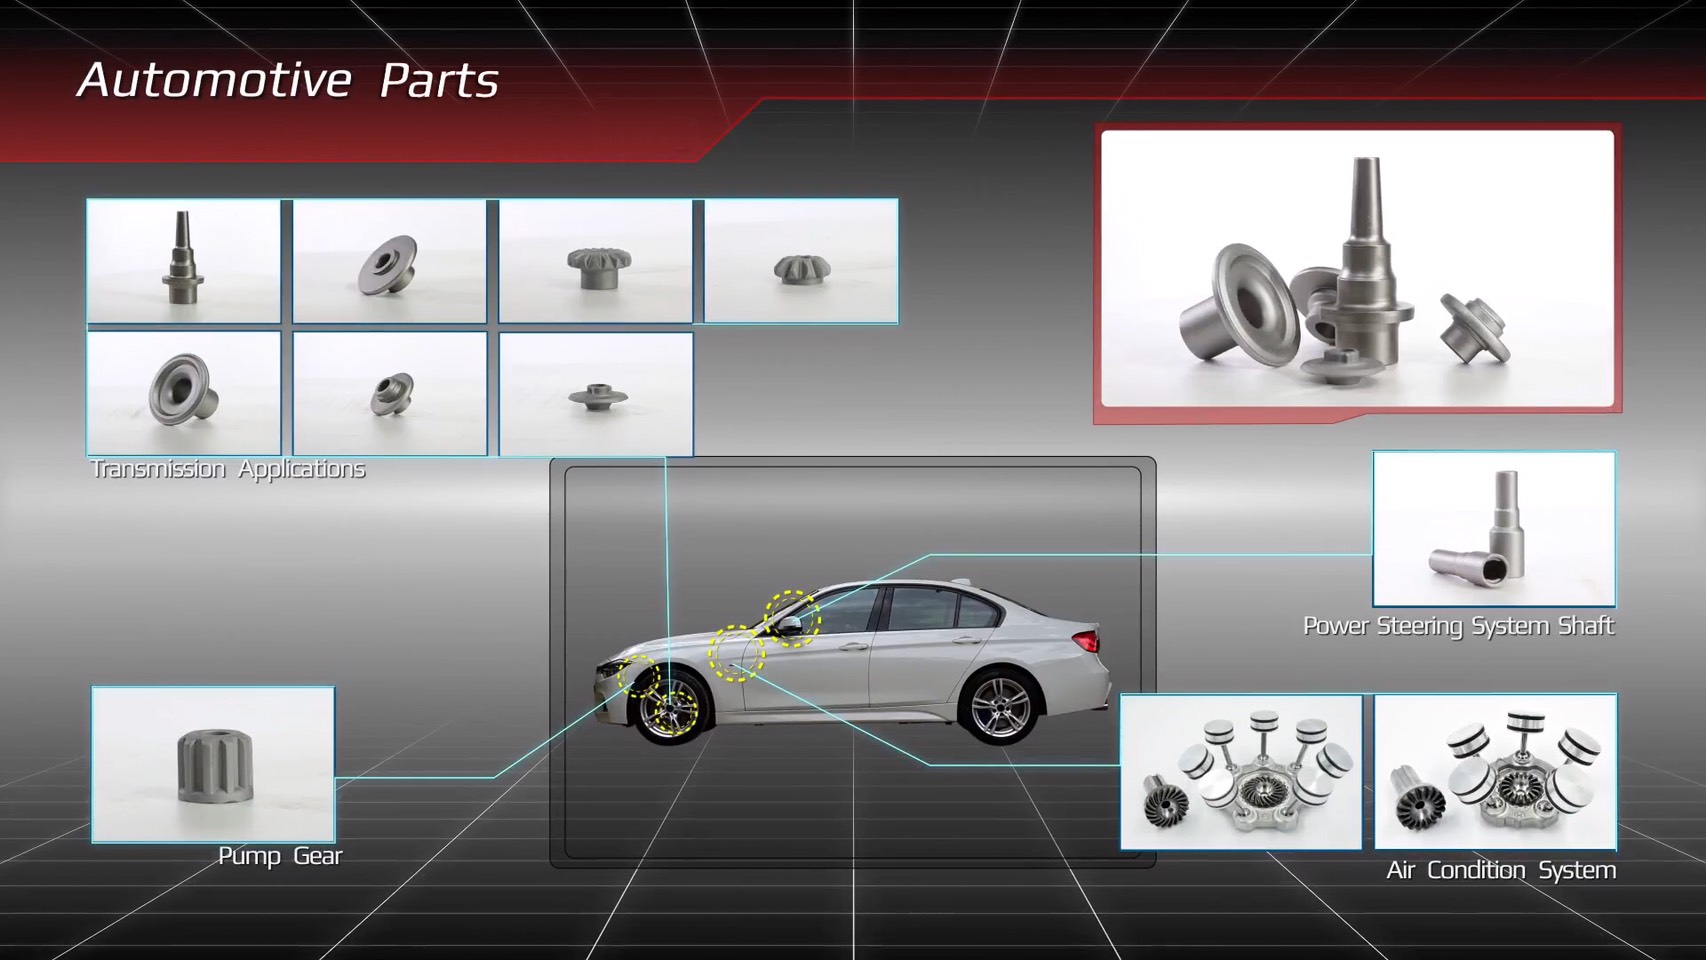 Automotive Part Components